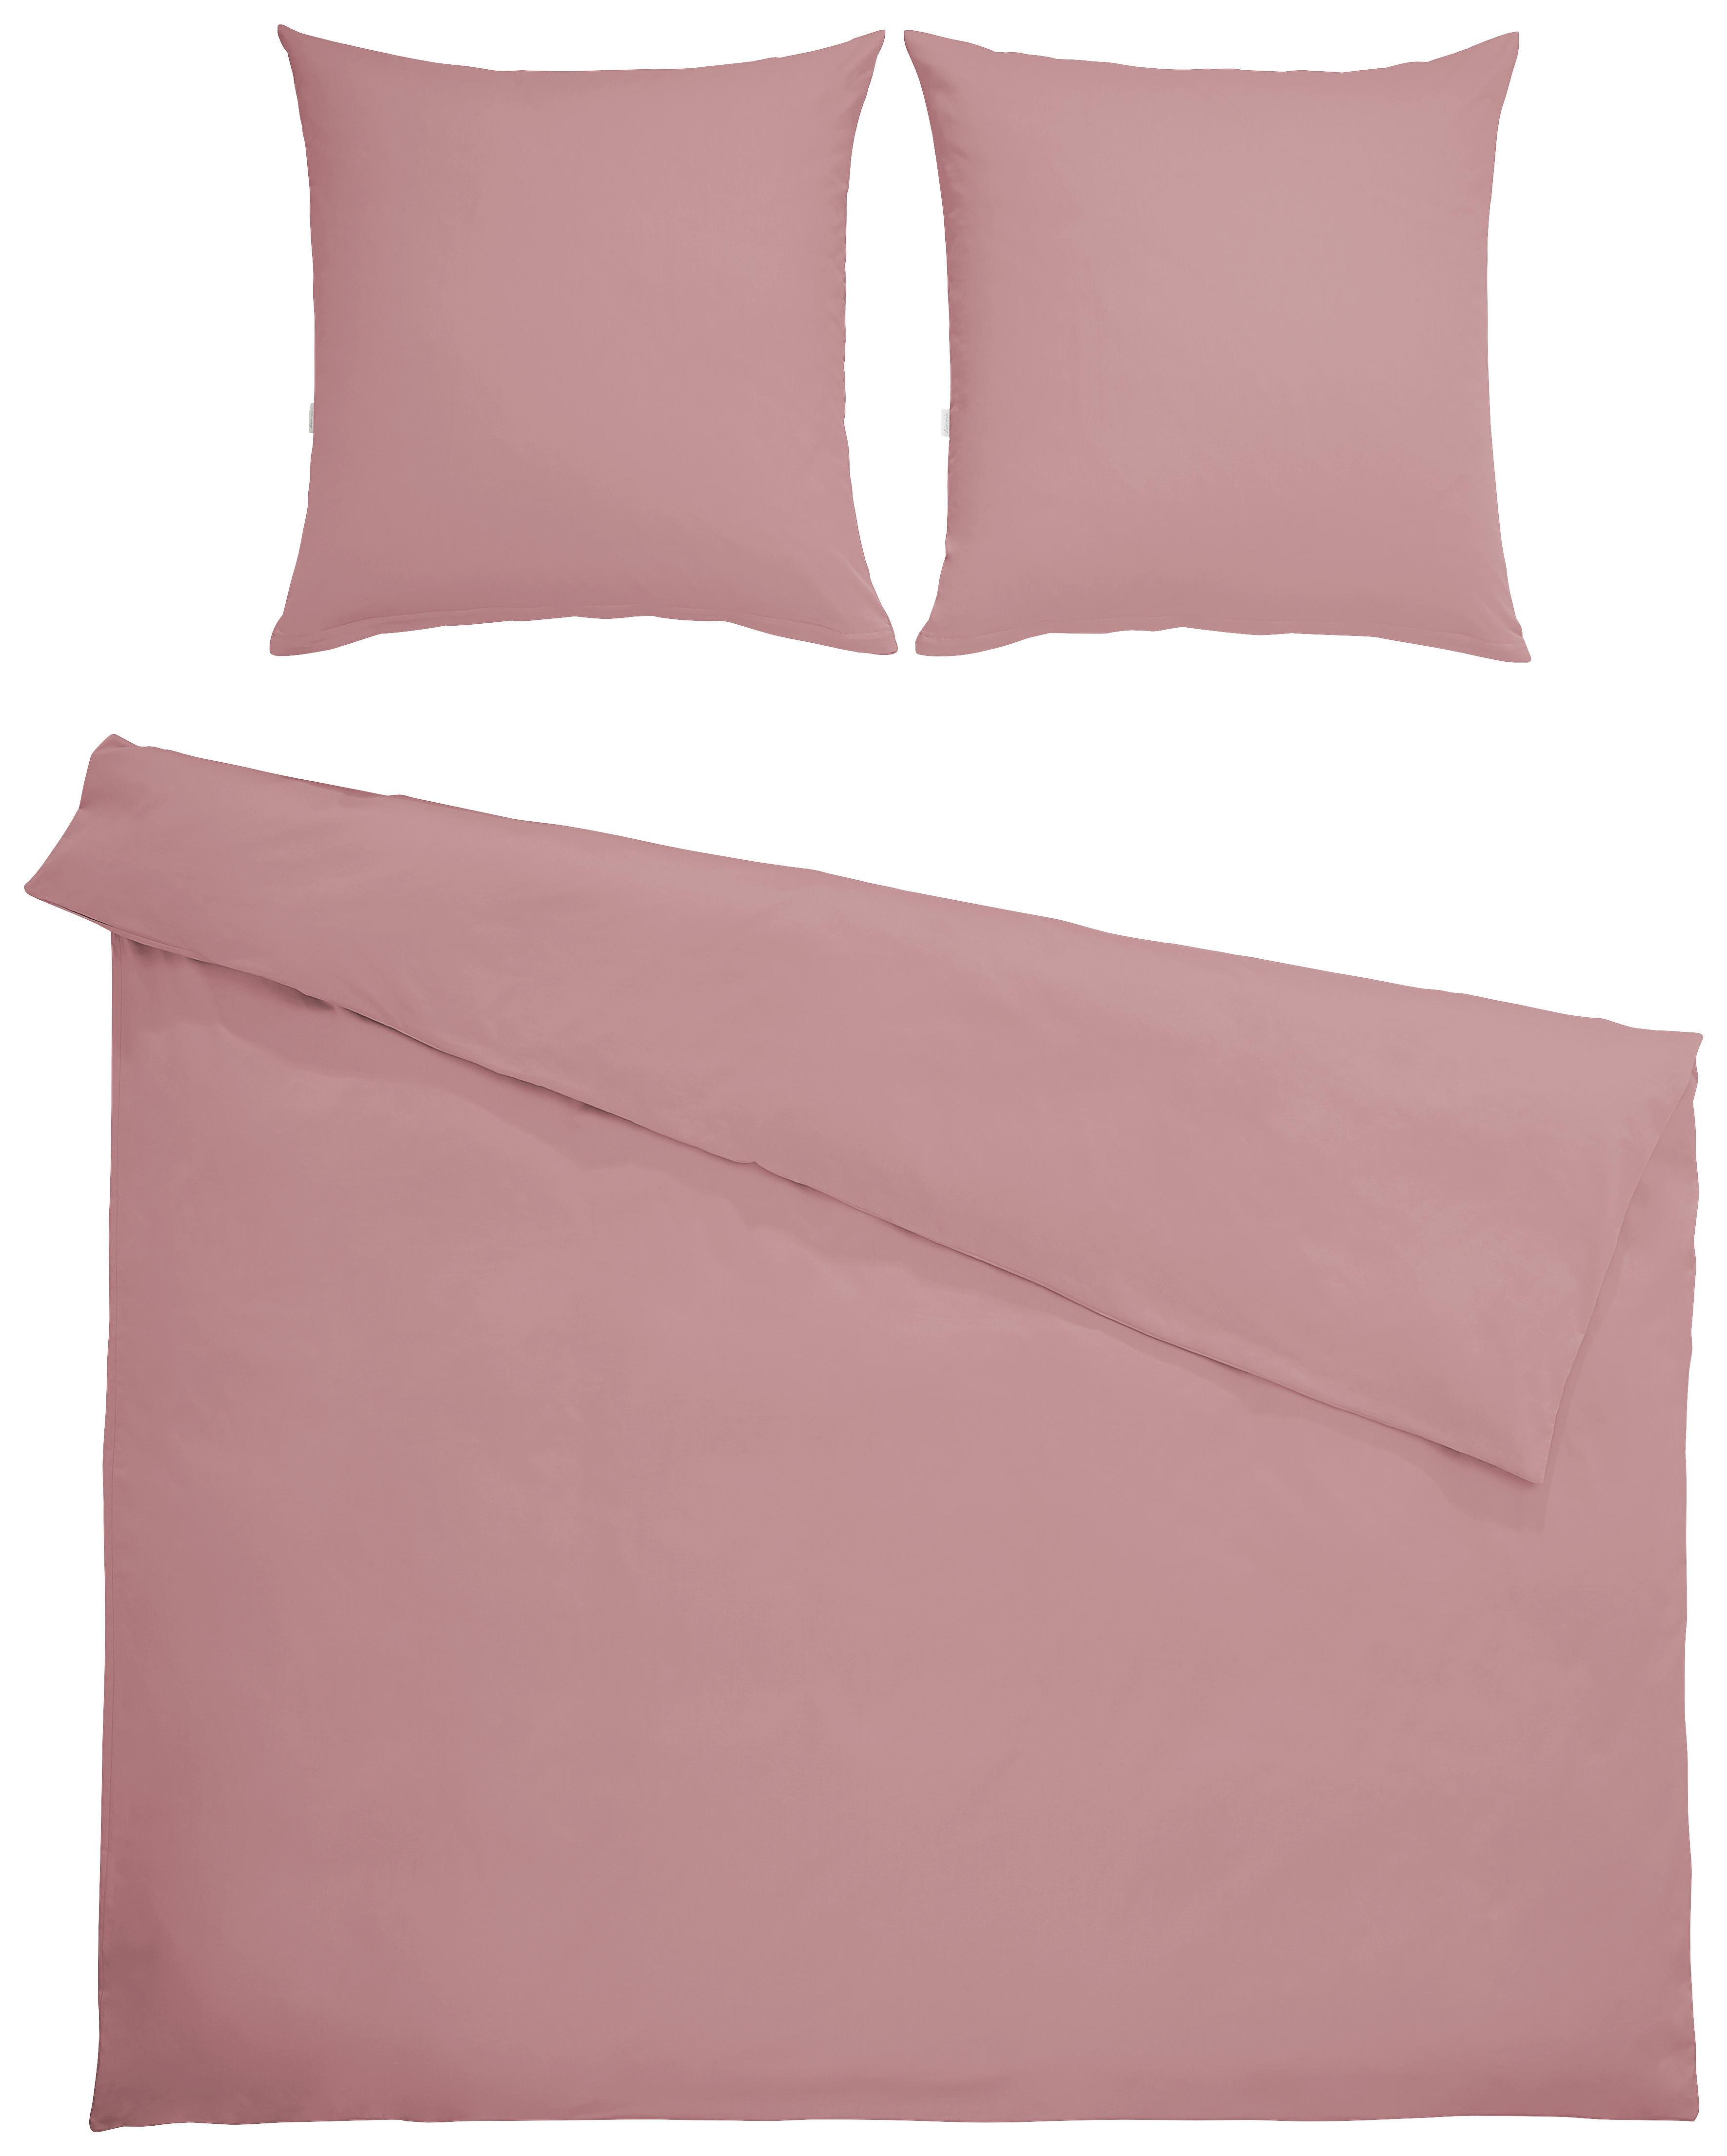 BETTWÄSCHE Satin  - Pink, KONVENTIONELL, Textil (200/200cm) - Bio:Vio